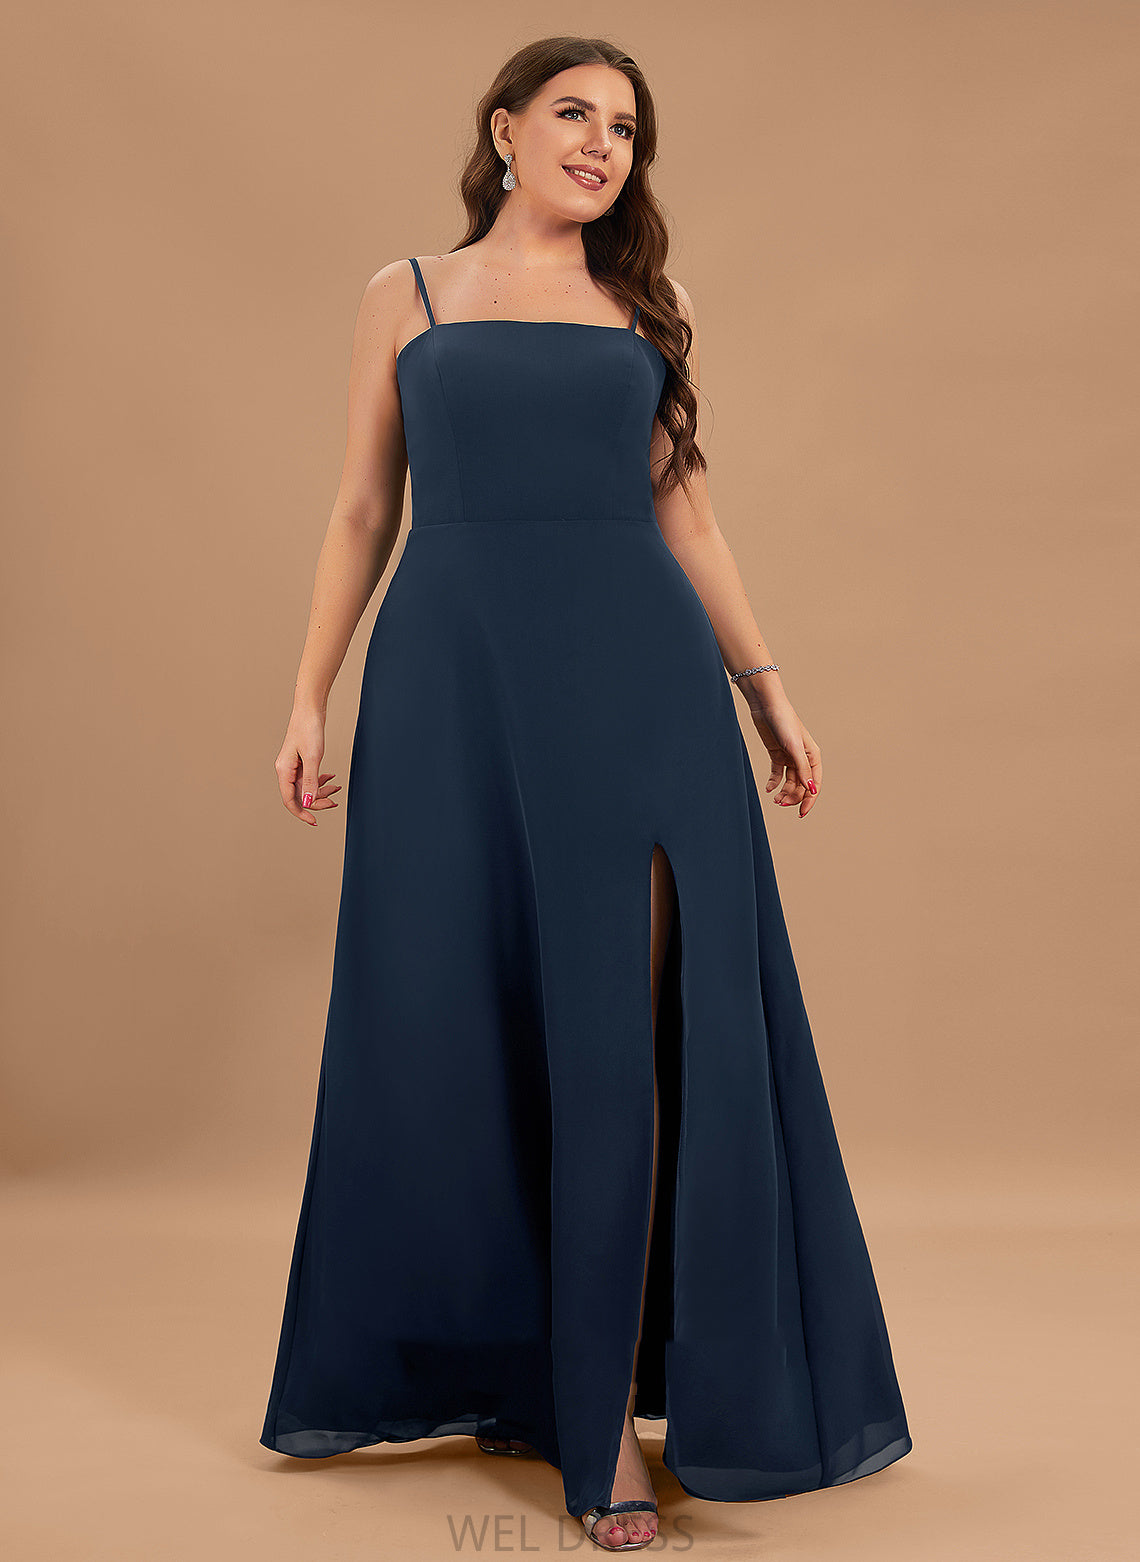 Silhouette SplitFront Floor-Length Length Embellishment A-Line SquareNeckline Neckline Fabric Jessica V-Neck Sleeveless Bridesmaid Dresses